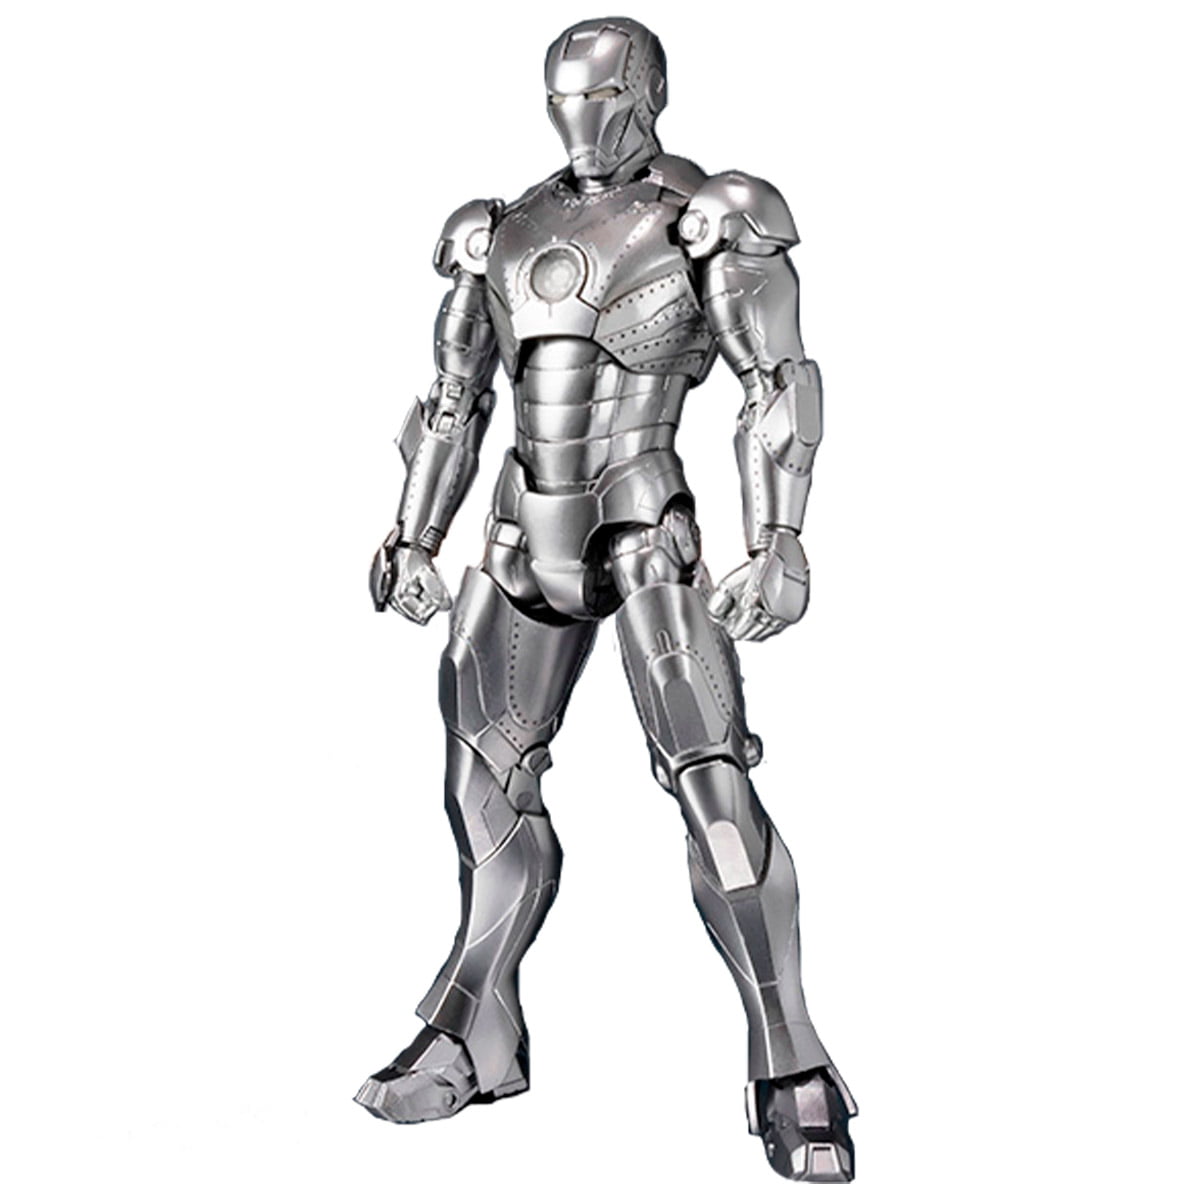 S.H. Figuarts Iron Man Mark 2 Homem de Ferro Mark II Bandai